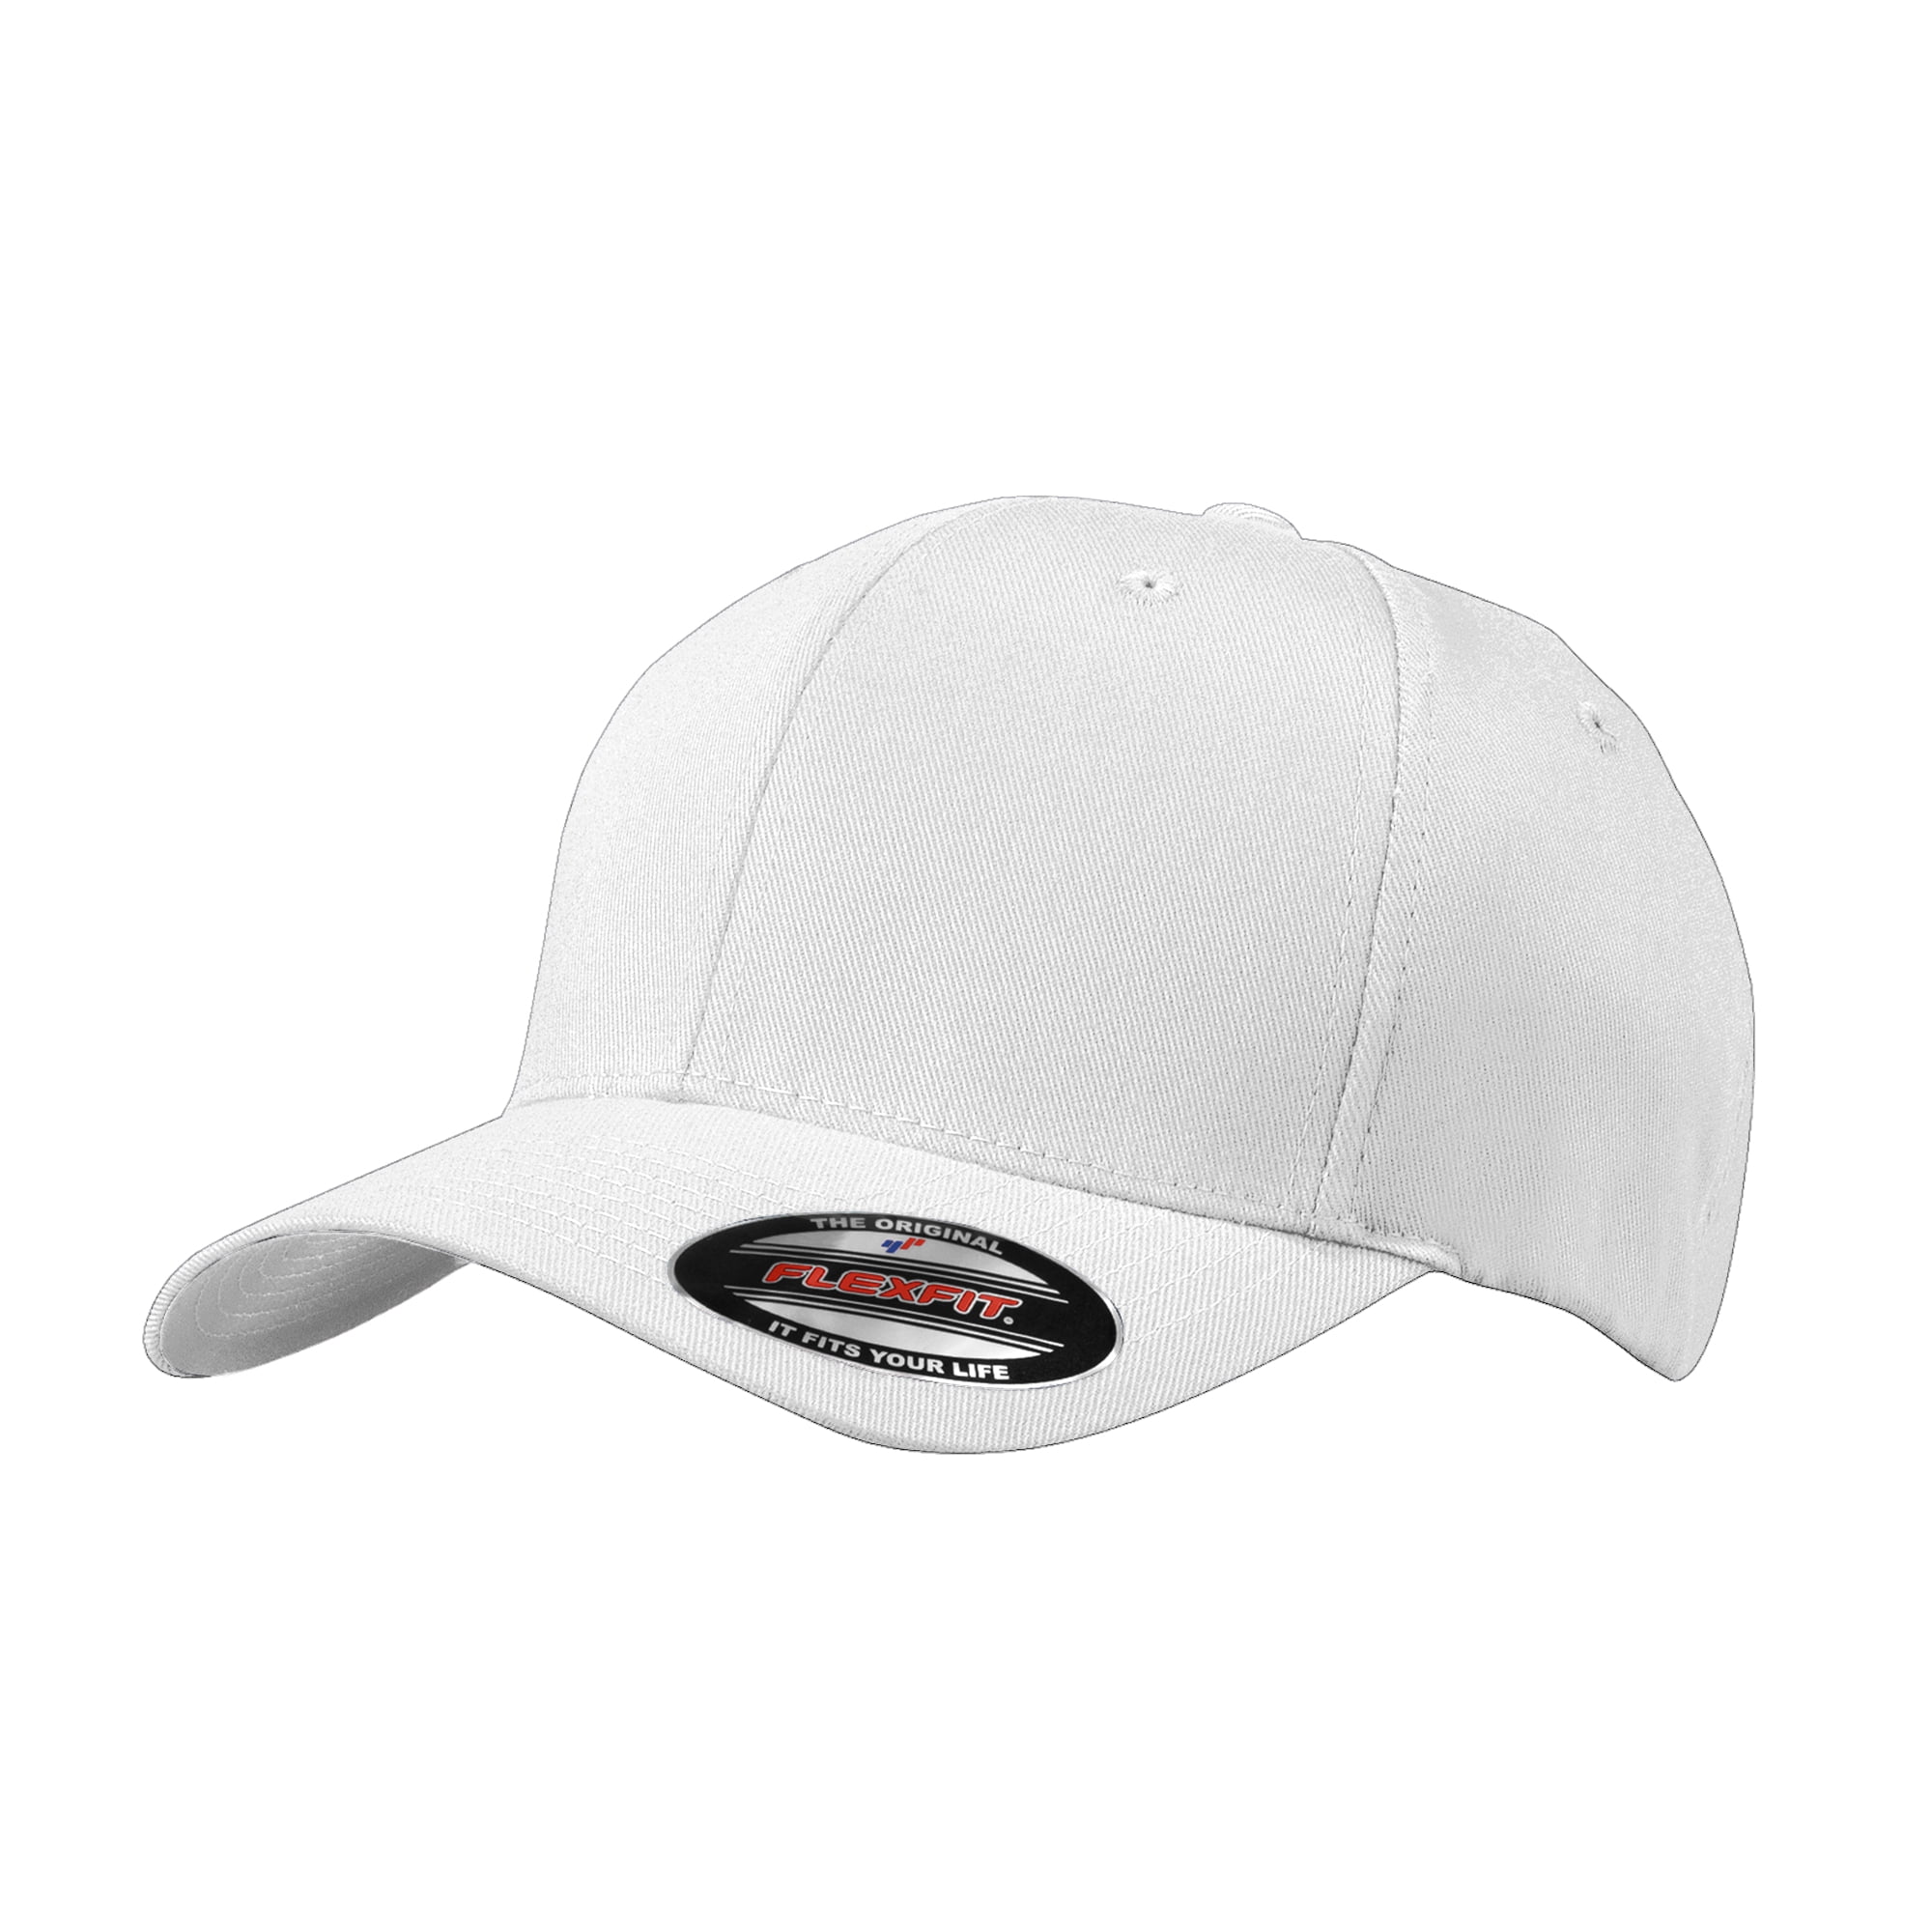 Men's Adult Flexfit Sun Cap Male Summer Hats White L/XL 